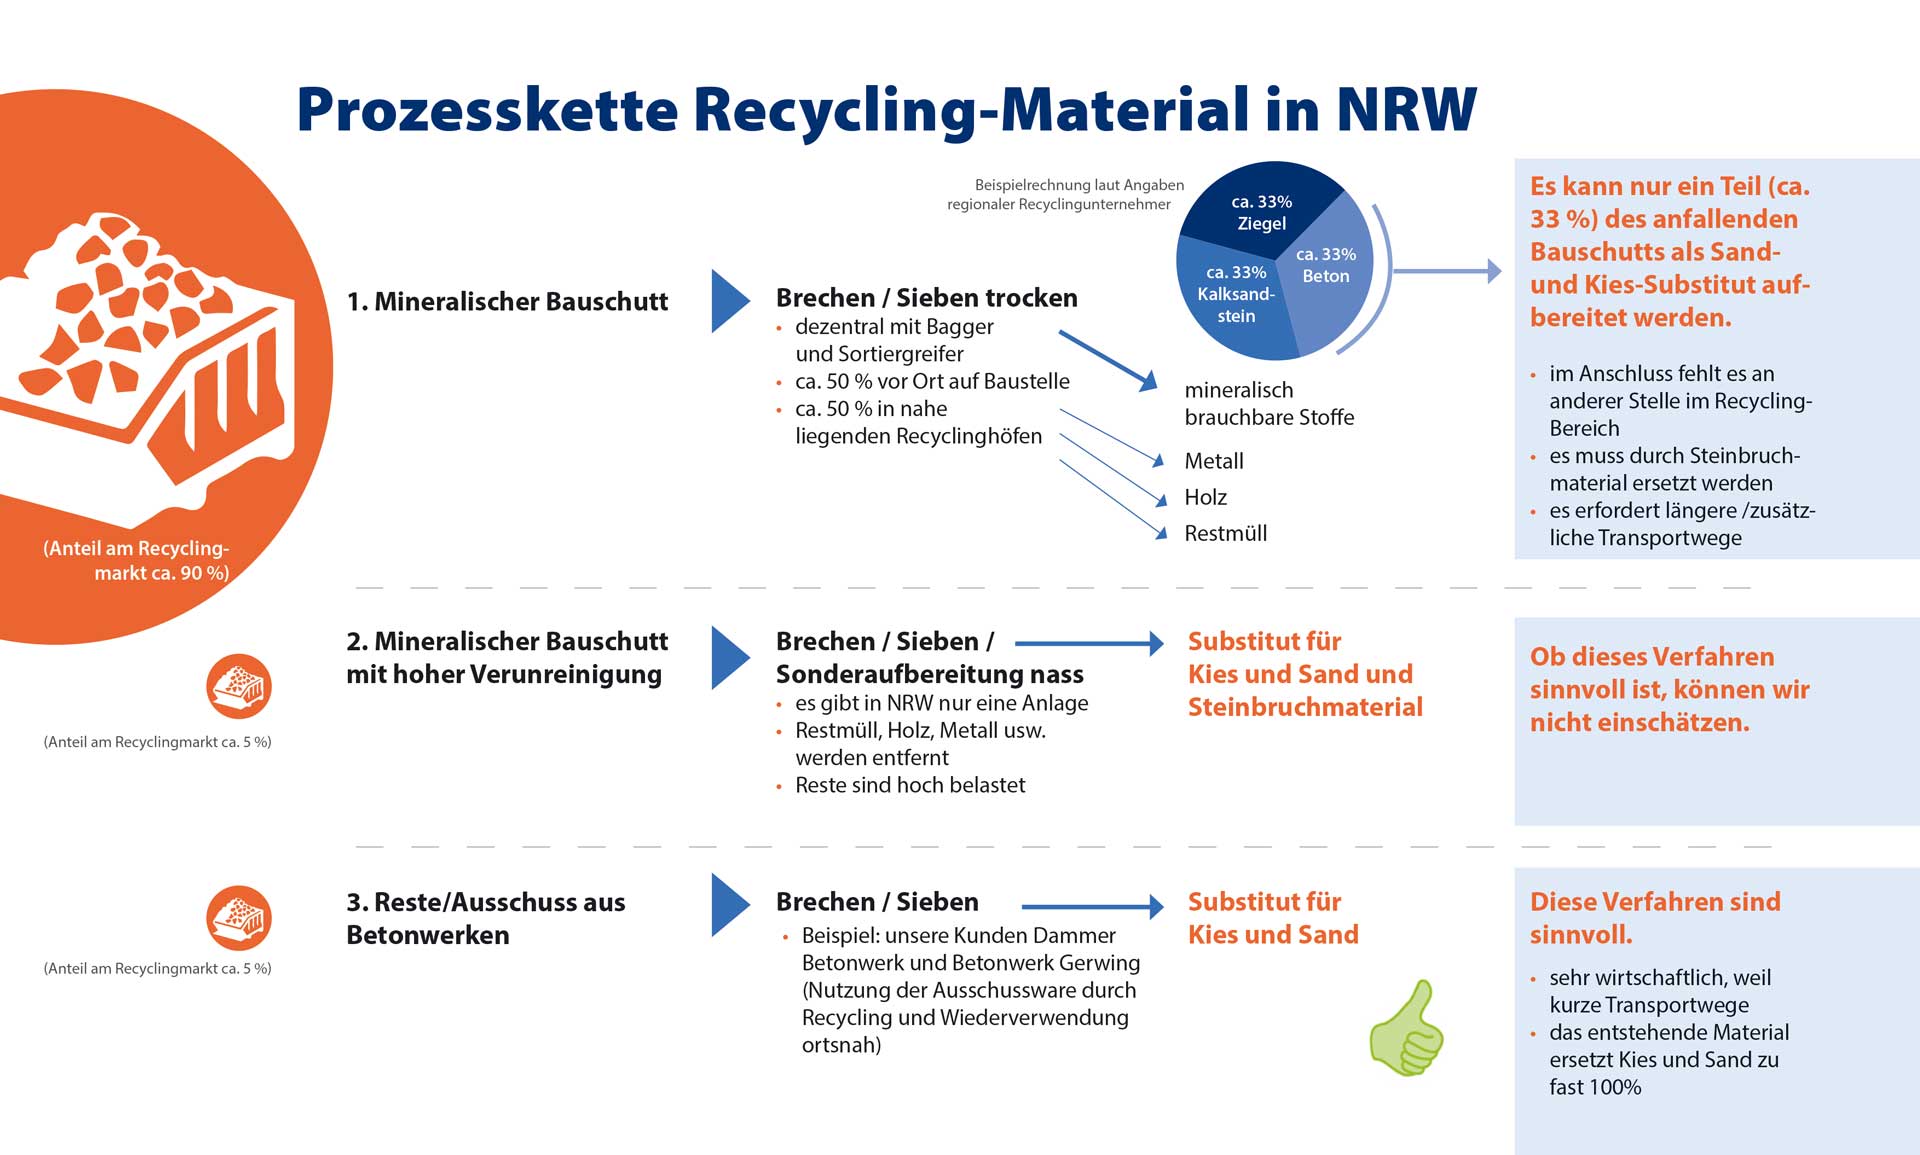 Die heutige Recycling-Prozesskette ist in sich geschlossen sowie ökologisch und ökonomisch sinnvoll.